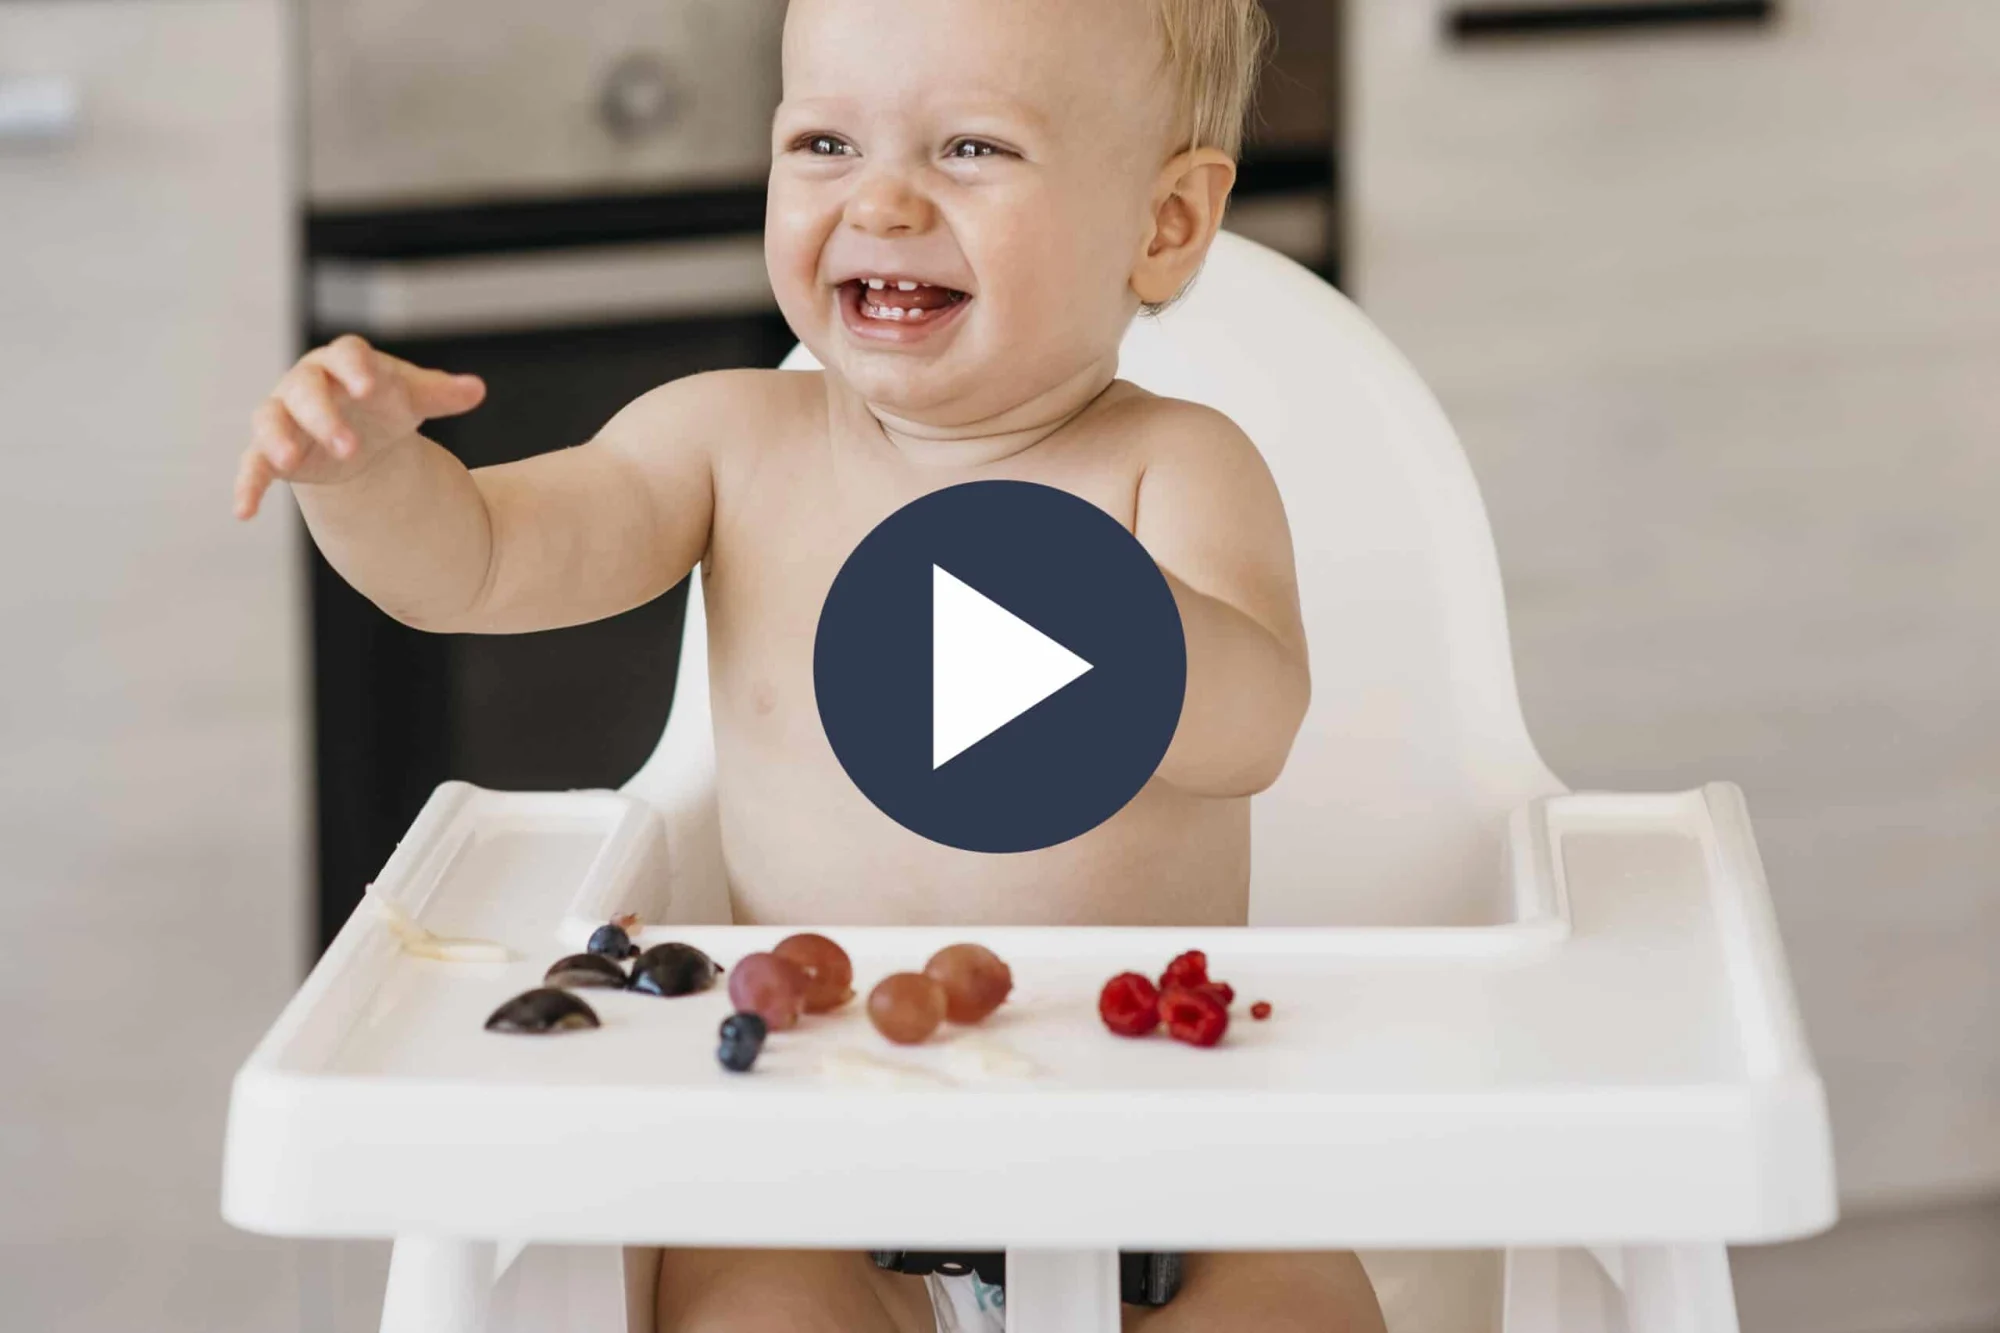 un bebé sentado en la silla alta blanca sonriendo y levantando sus brazos, con frutas cortadas en la bandeja retirable